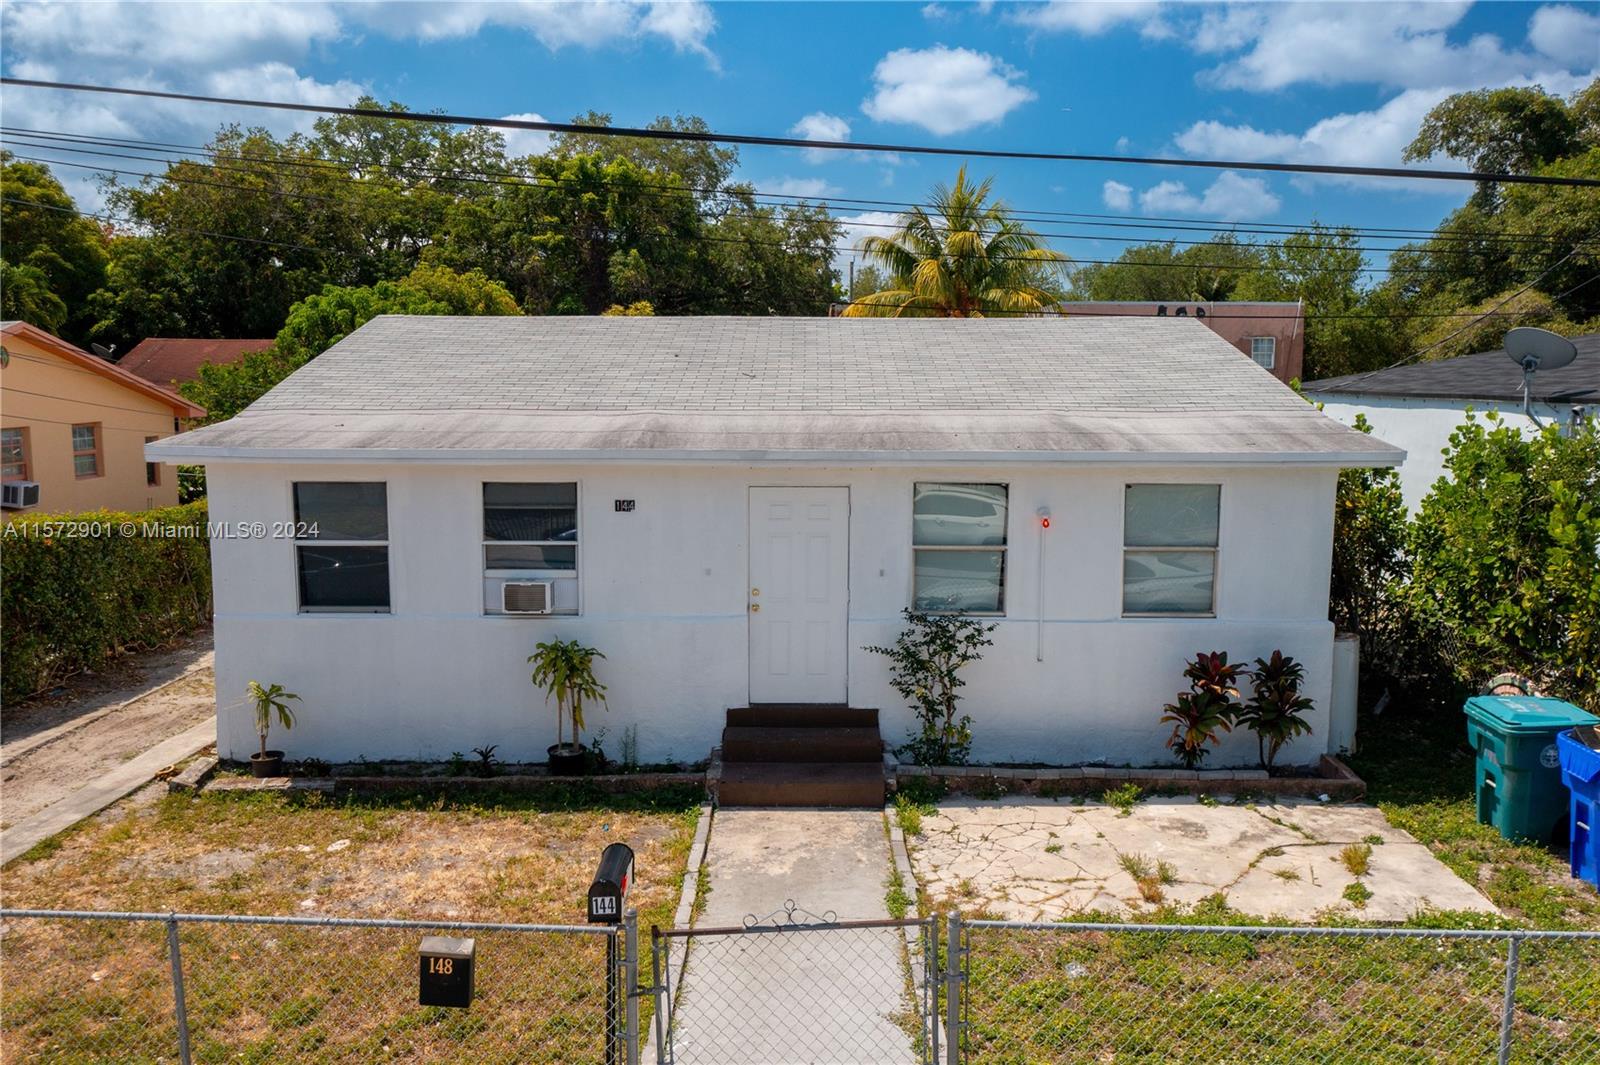 Rental Property at 144 Nw 53rd St St, Miami, Broward County, Florida -  - $849,900 MO.